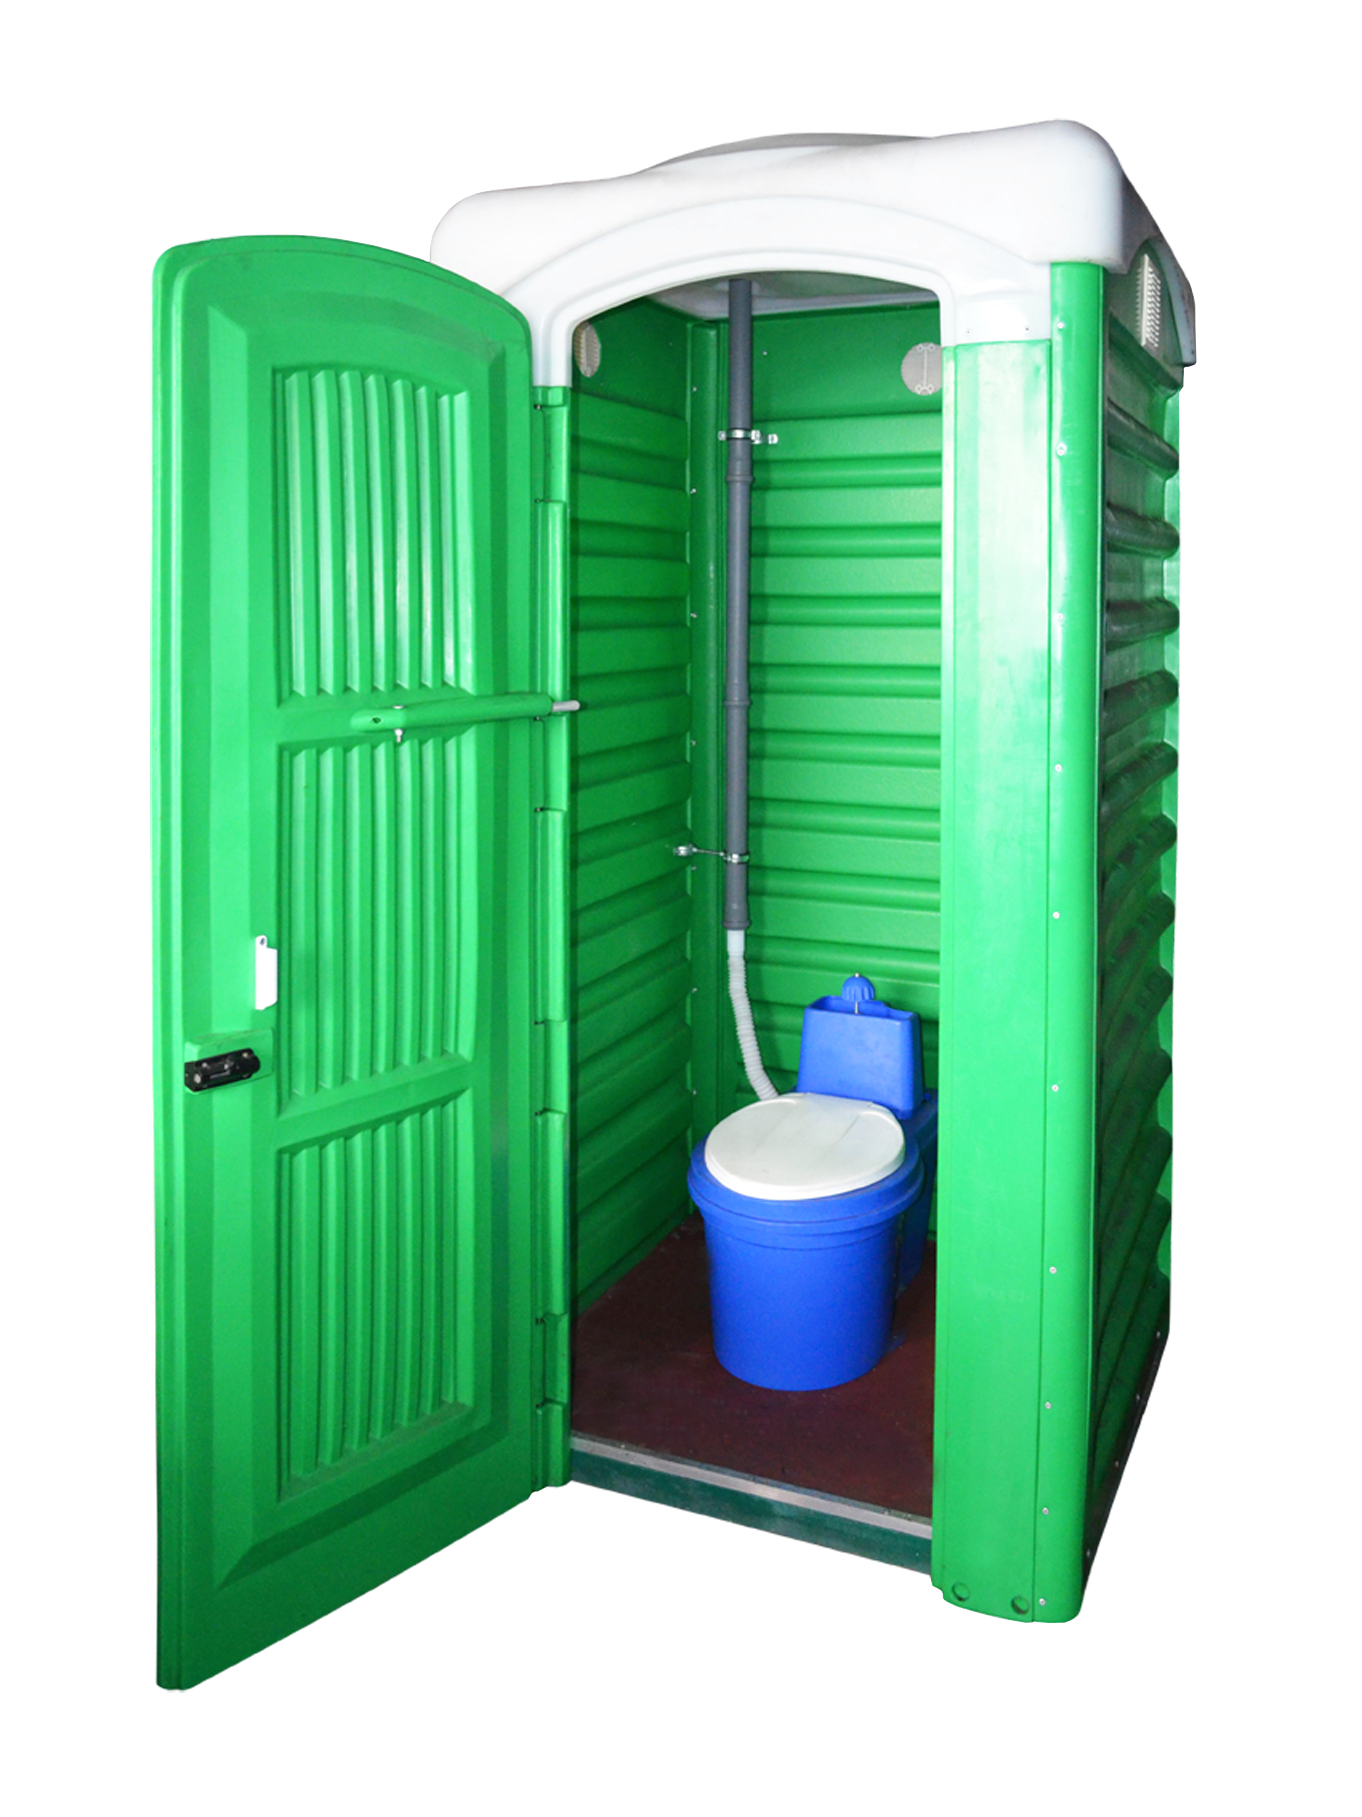 Купить туалет комплект. Биотуалет Toypek туалетная кабина. Биотуалет кабинка Эколайт. Кабина туалетная Ecolight Ecolight Дачник. Туалетная кабина 2400х1100х2300 Аляска.